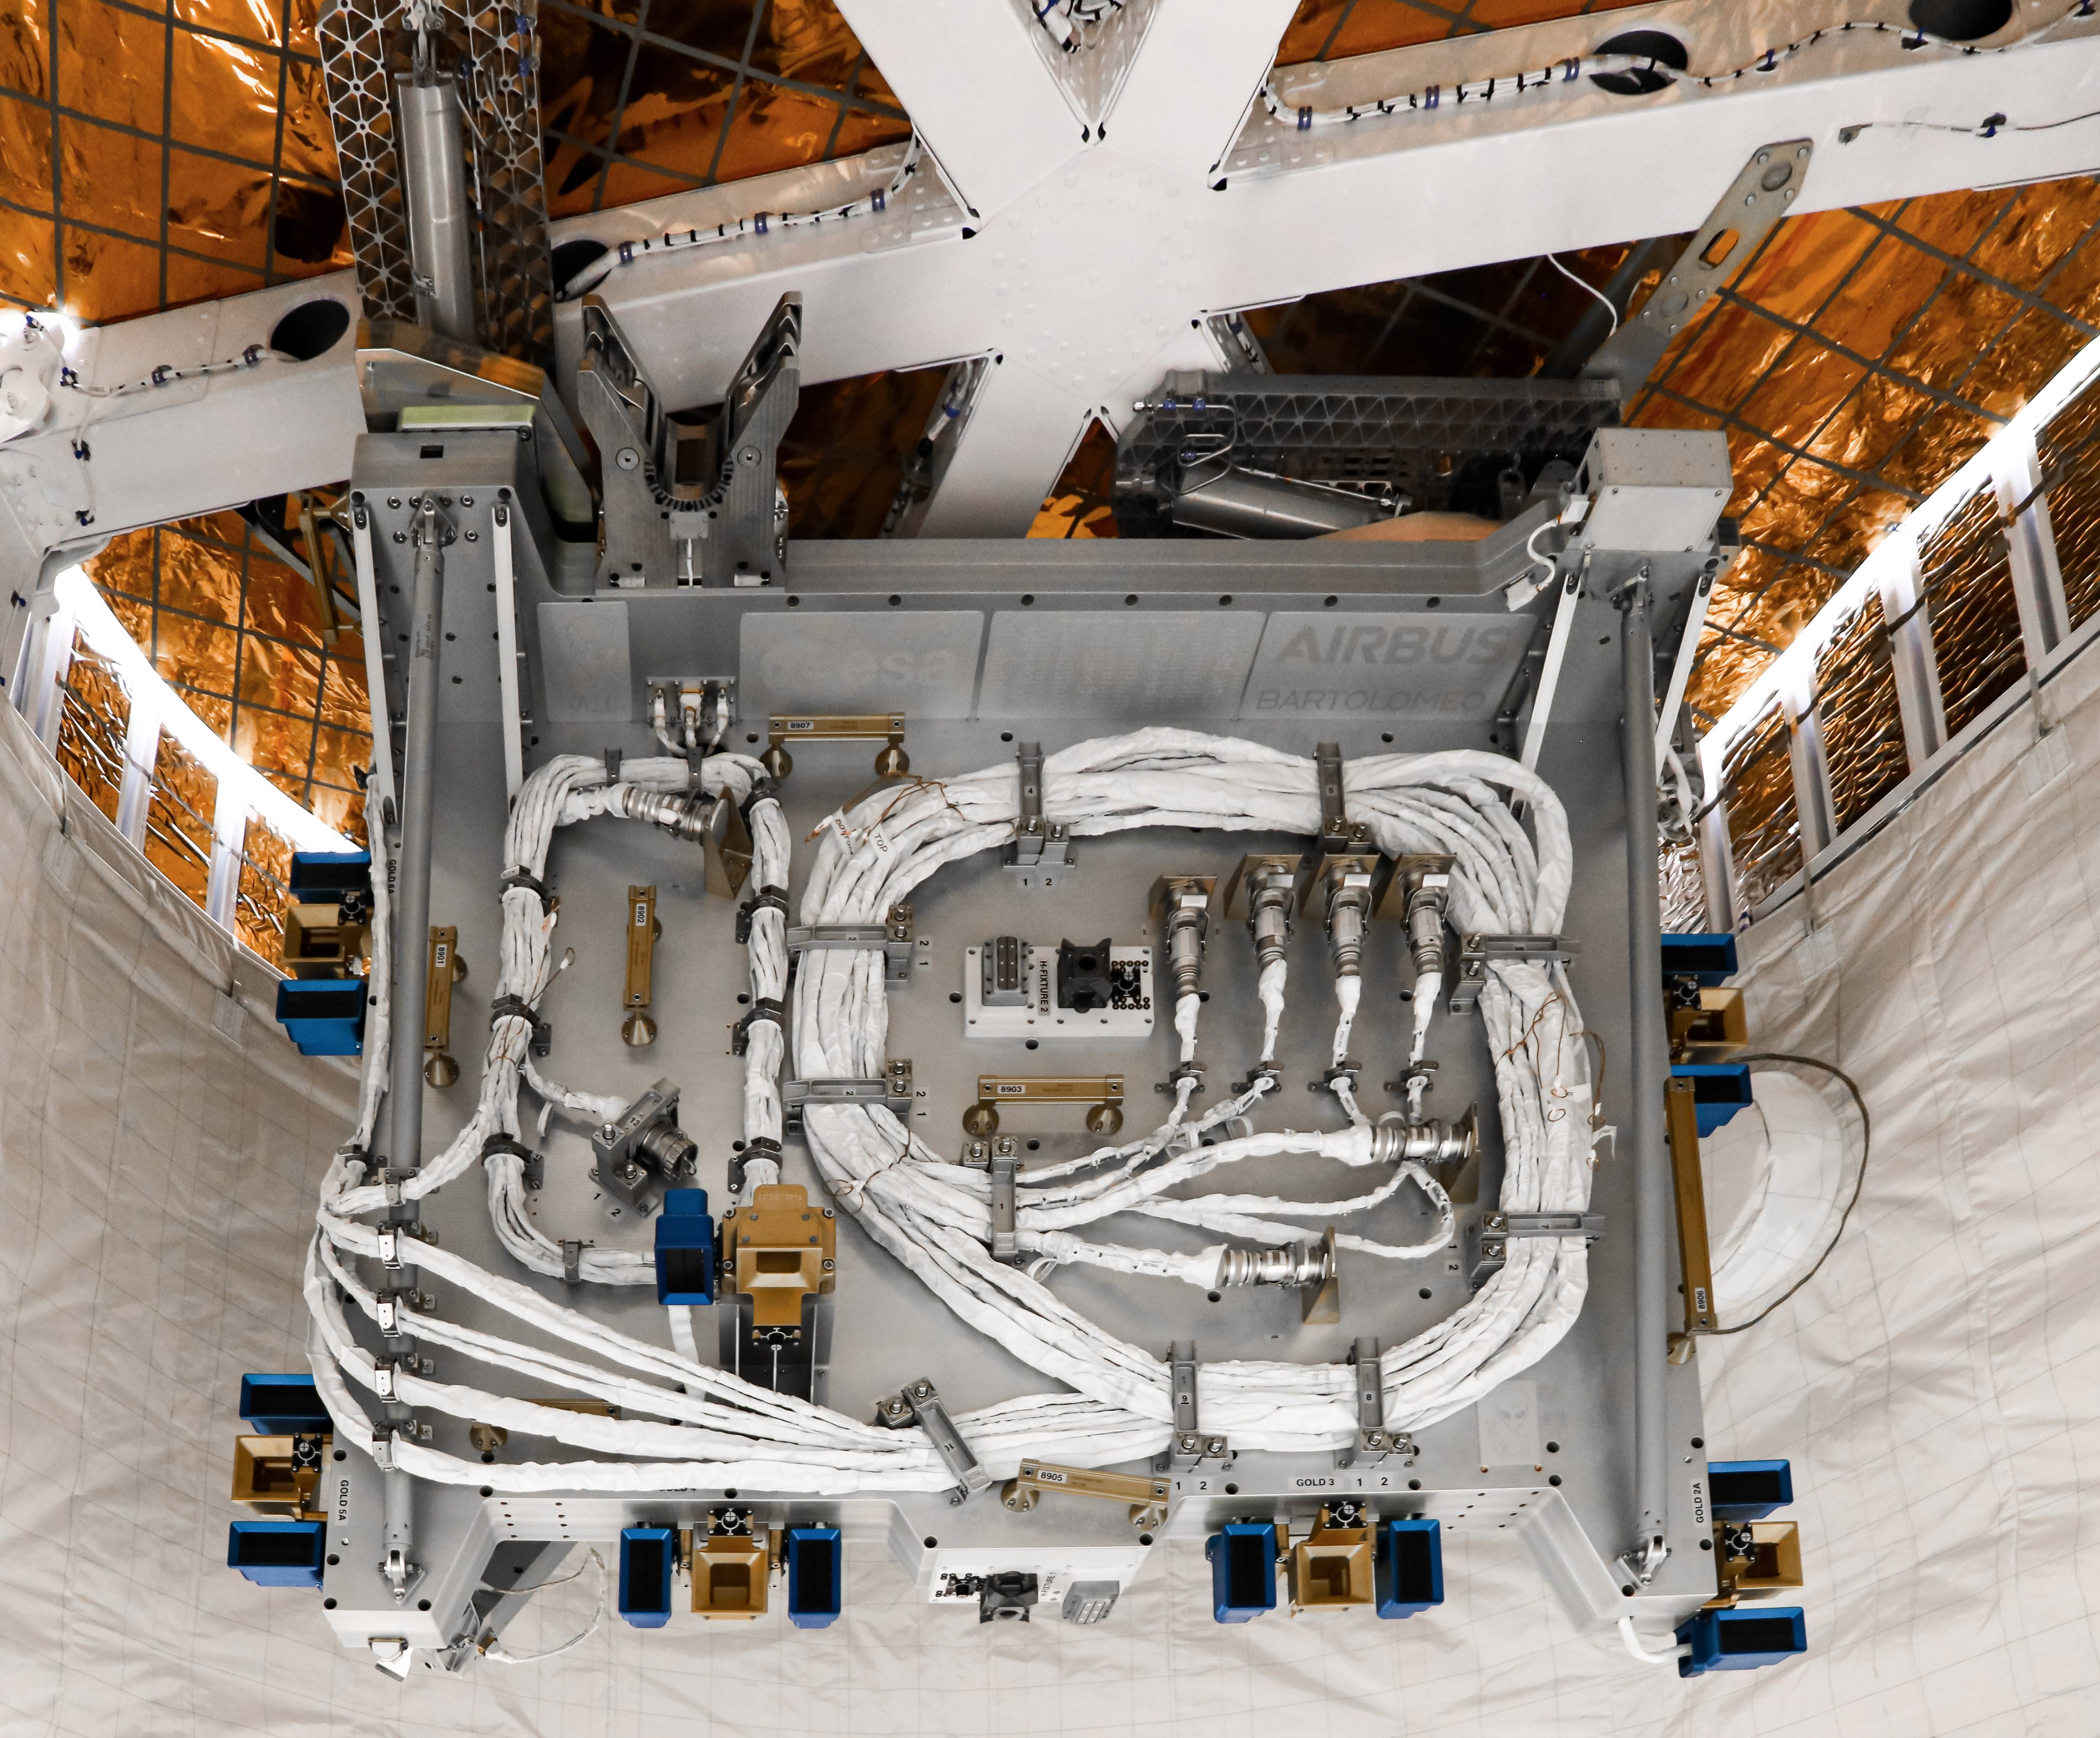 Platforma Bartolomeo umieszczona w statku Dragon 1 (Źródło: Airbus Space)